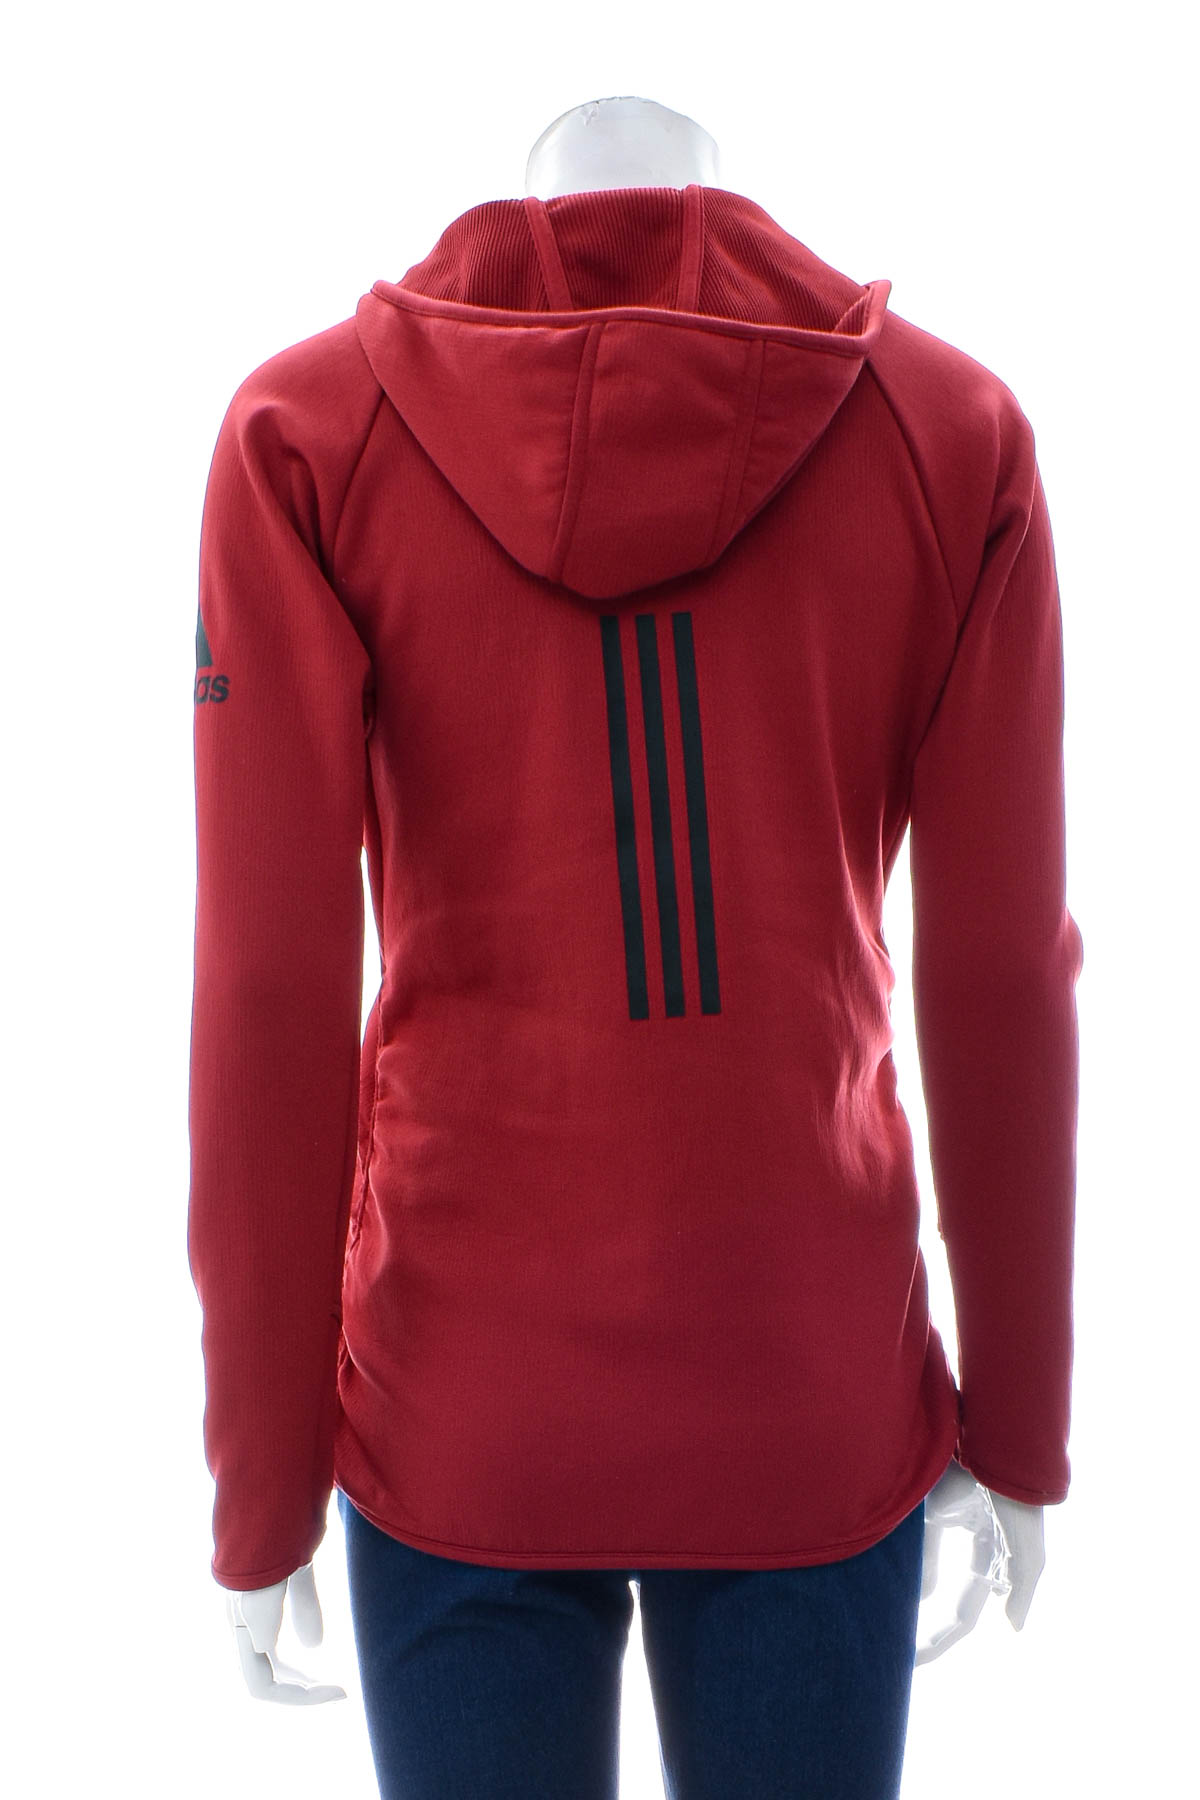 Sweatshirt for Girl - Adidas - 1